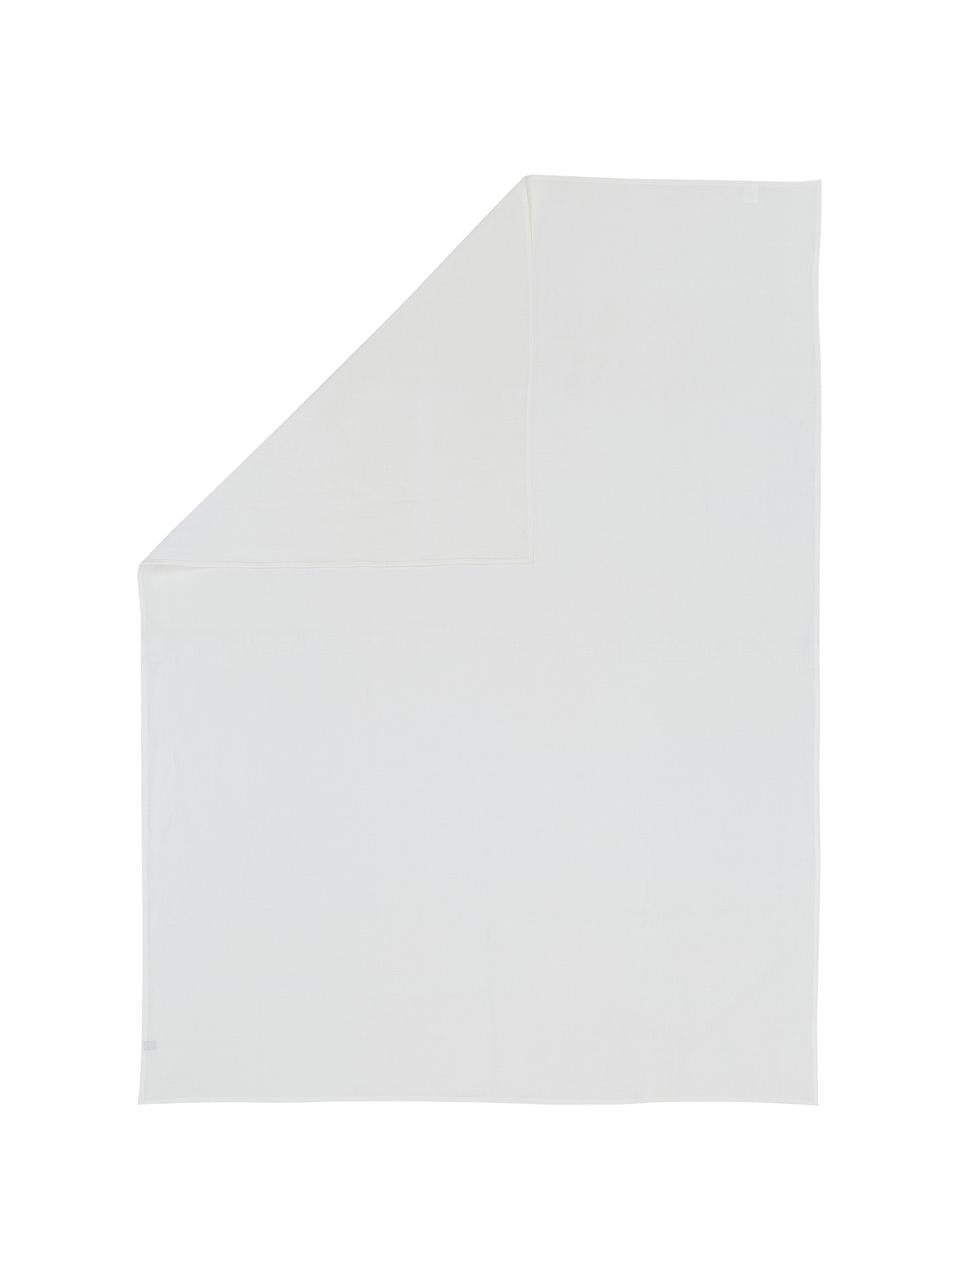 Linnen tafelkleed Heddie in wit, 100% linnen, Wit, Voor 4 - 6 personen (B 145 x L 200 cm)